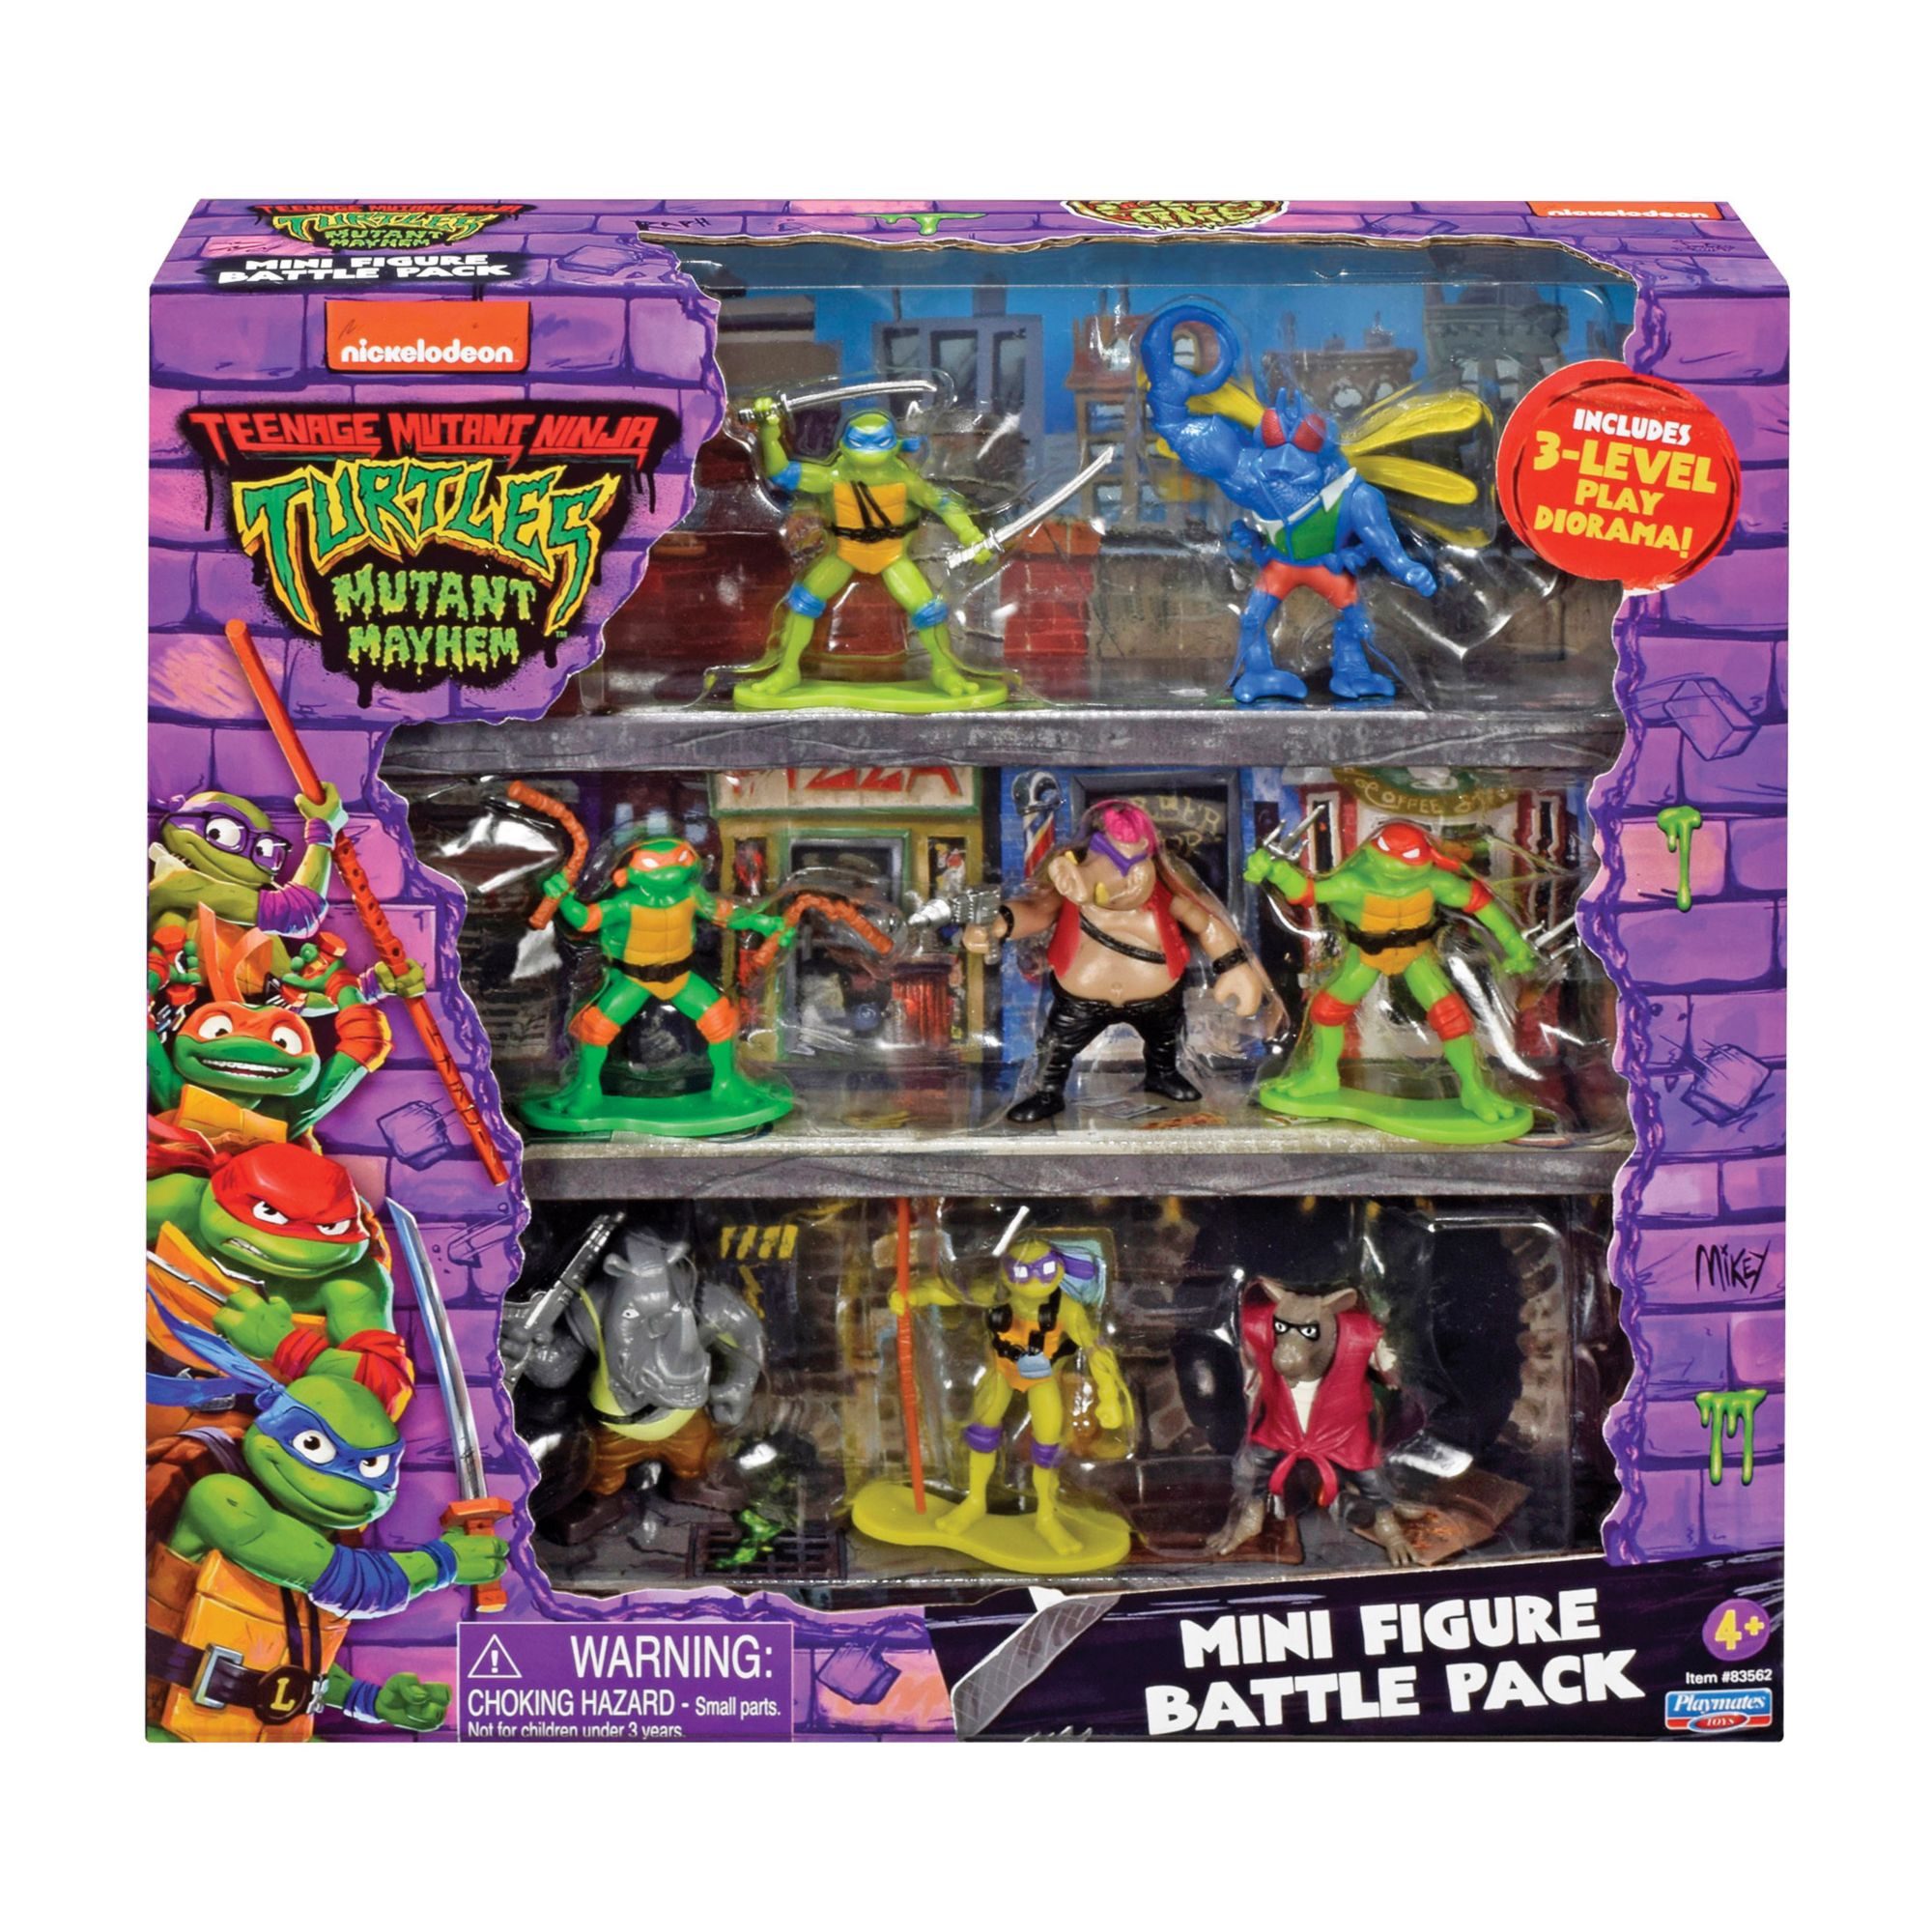 Pack　Playmates　Wholesale　BJ's　Ninja　Mayhem　Turtles:　Mini　Battle　Mutant　Figure　Mutant　Teenage　Club